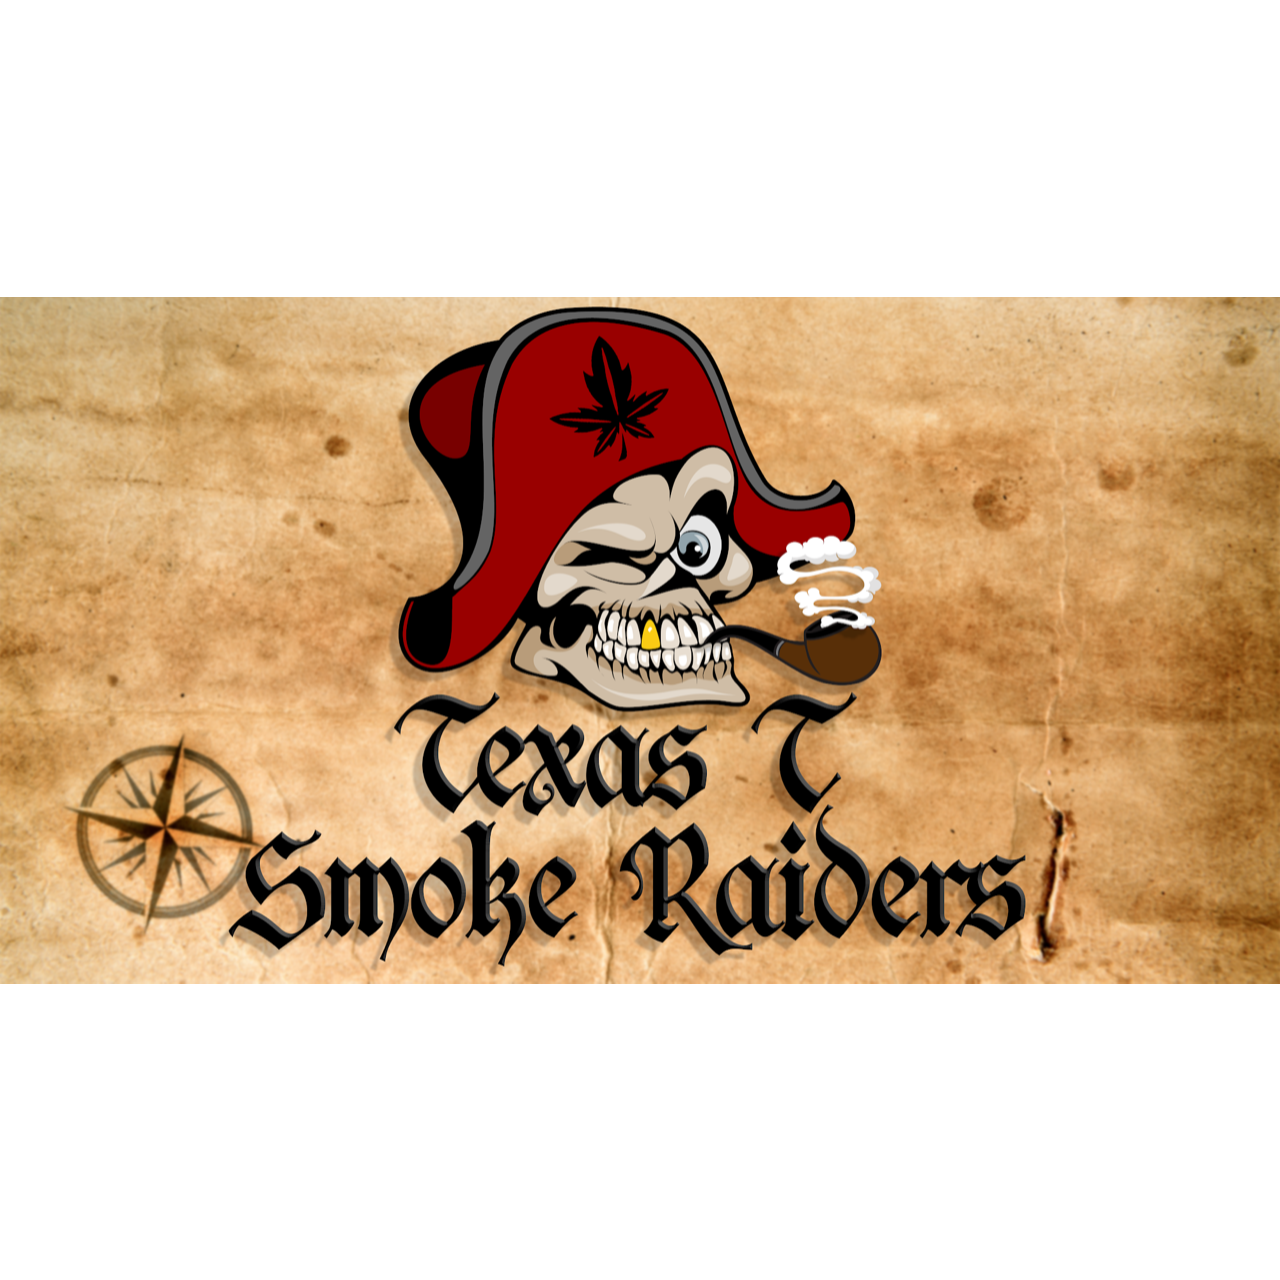 Texas T Smoke Raiders Logo